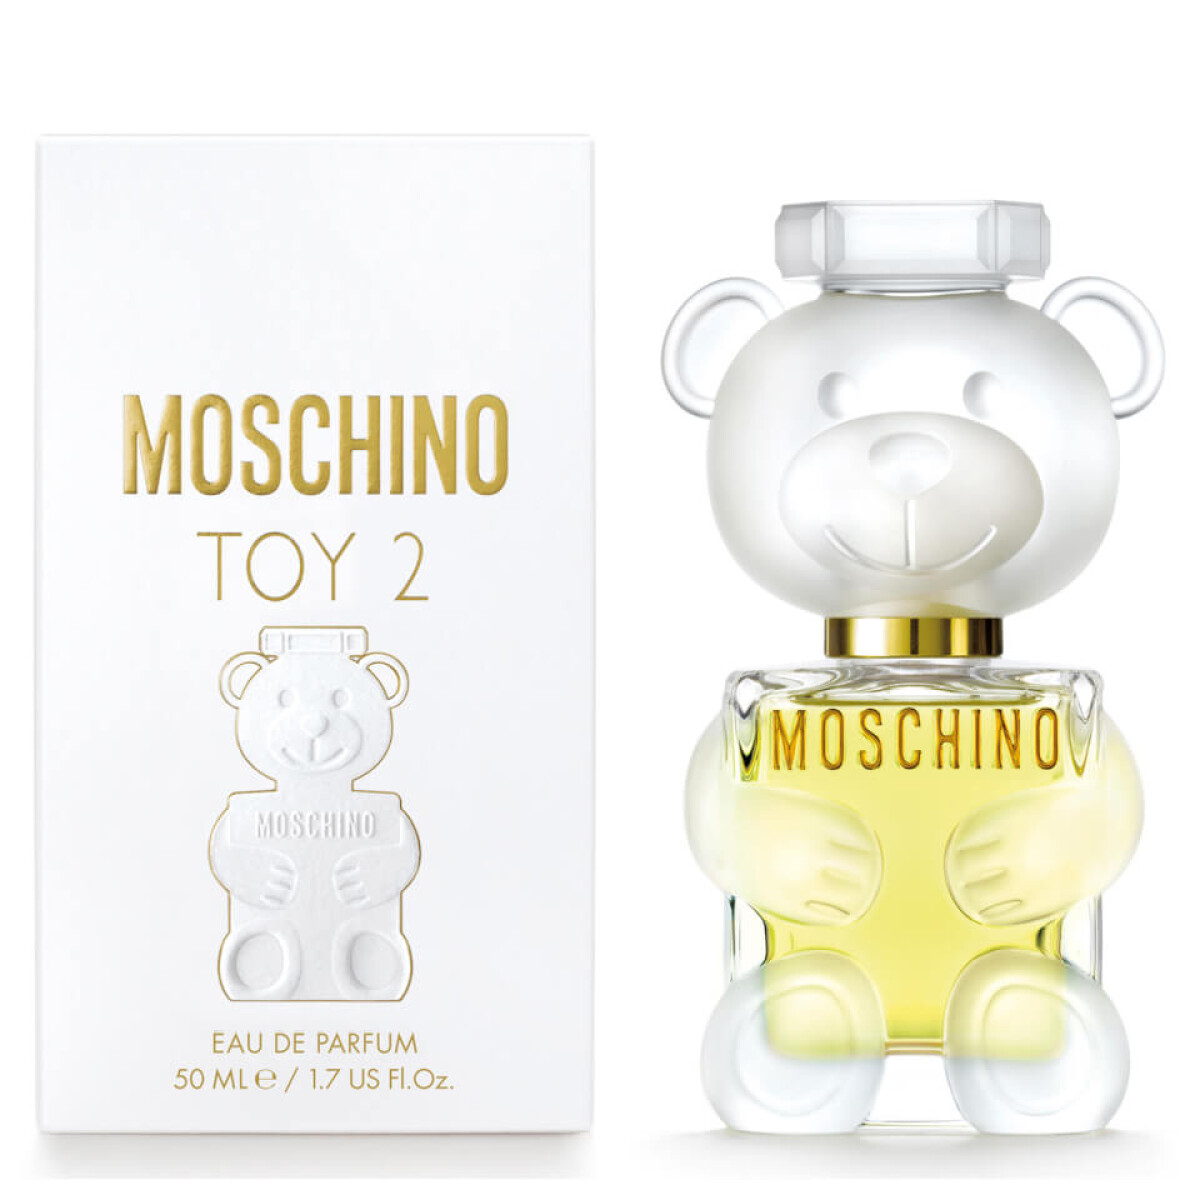 Perfume Moschino TOY 2 EDP 50ml Original 